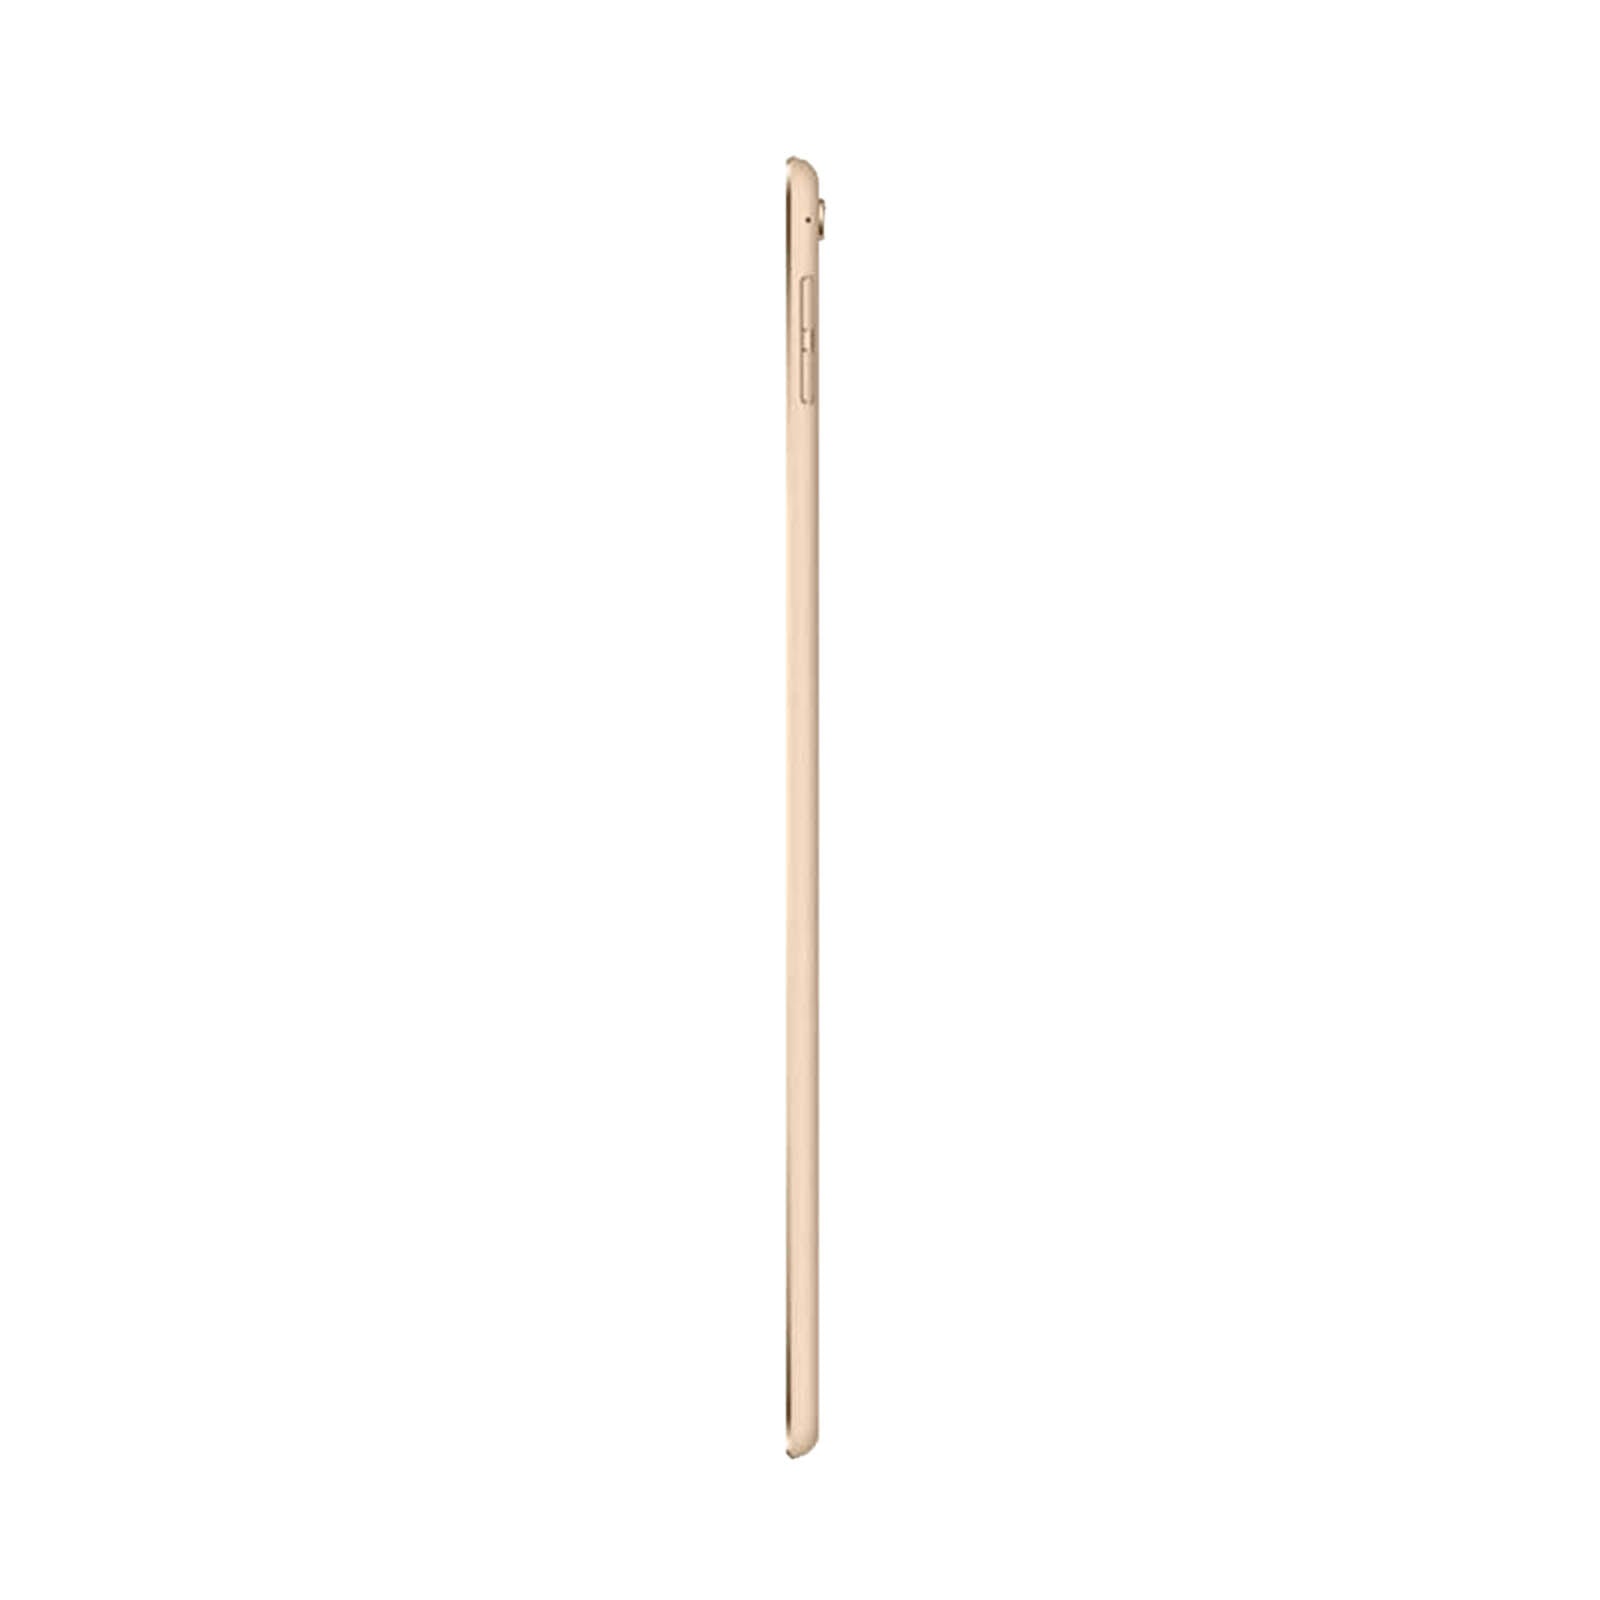 iPad Pro 9.7 Inch 256GB Gold Good - WiFi